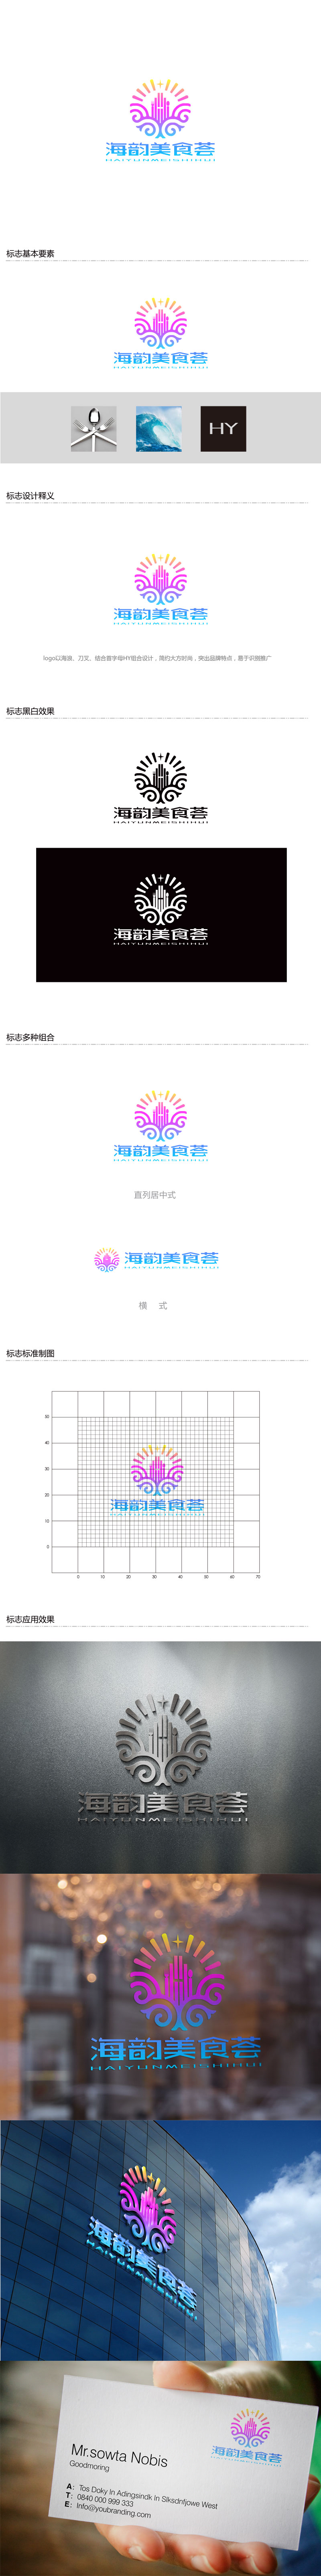 孙金泽的海韵美食荟logo设计